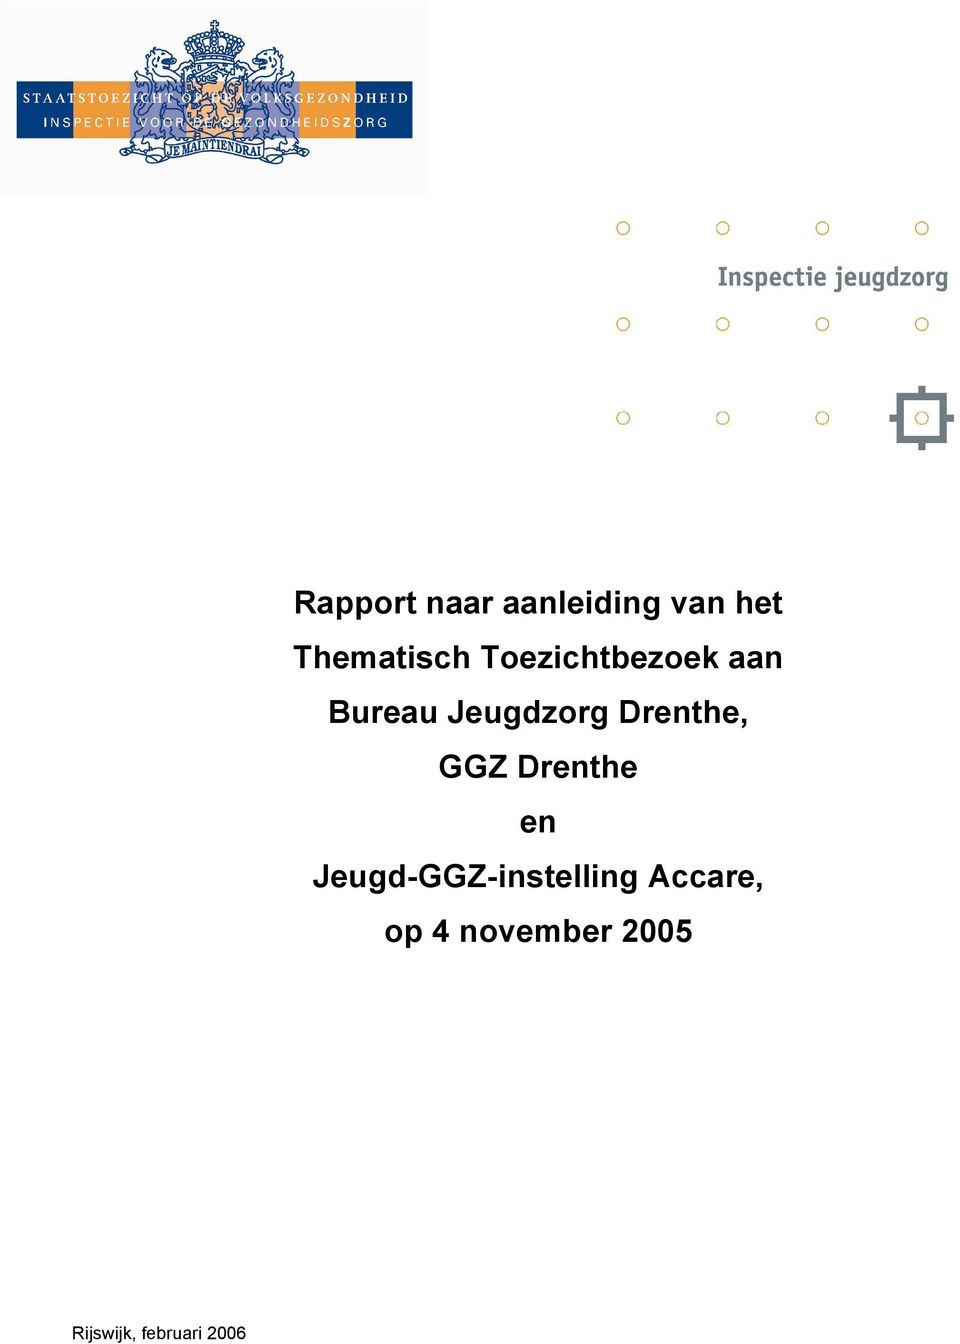 Drenthe, GGZ Drenthe en